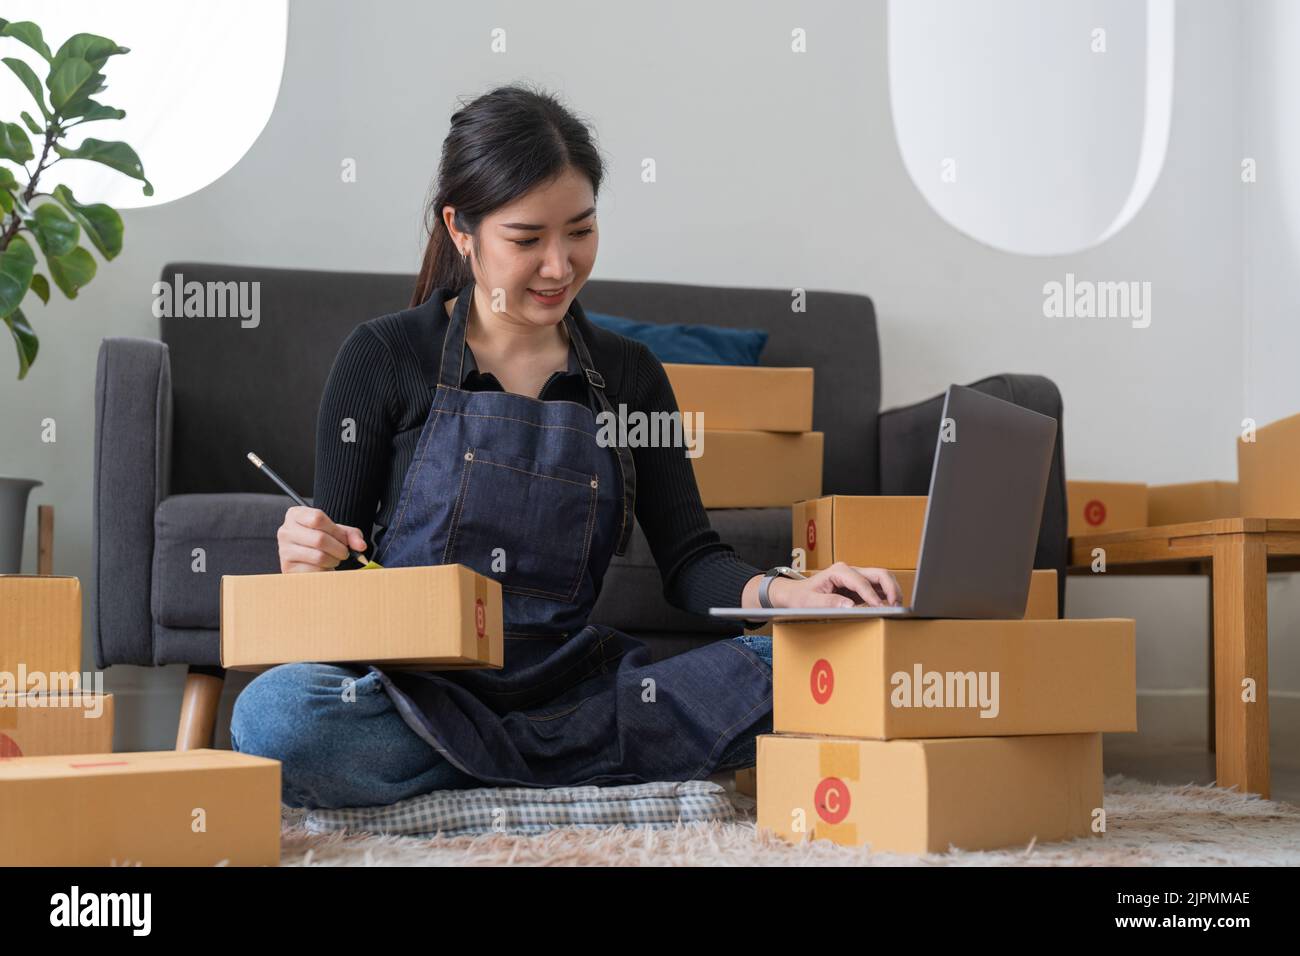 Startup Kleinunternehmen Eigentümer schriftlich Adresse auf Karton am Arbeitsplatz. Freelance Asian Frau Kleinunternehmen Unternehmer KMU arbeitet mit Box an Stockfoto